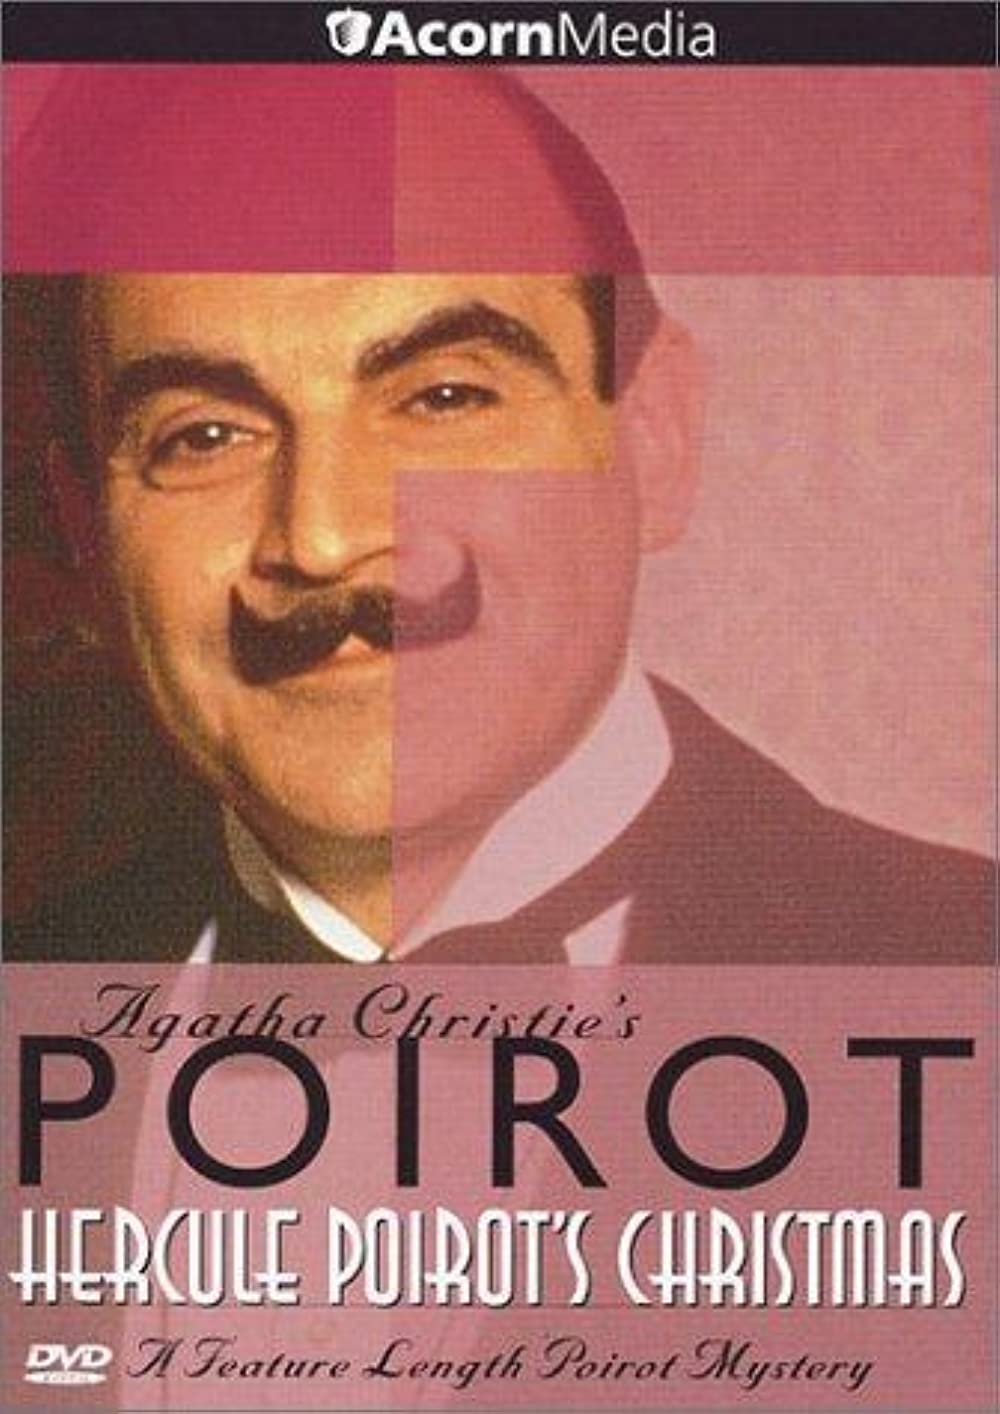 Hercule Poirot's Christmas (1994)